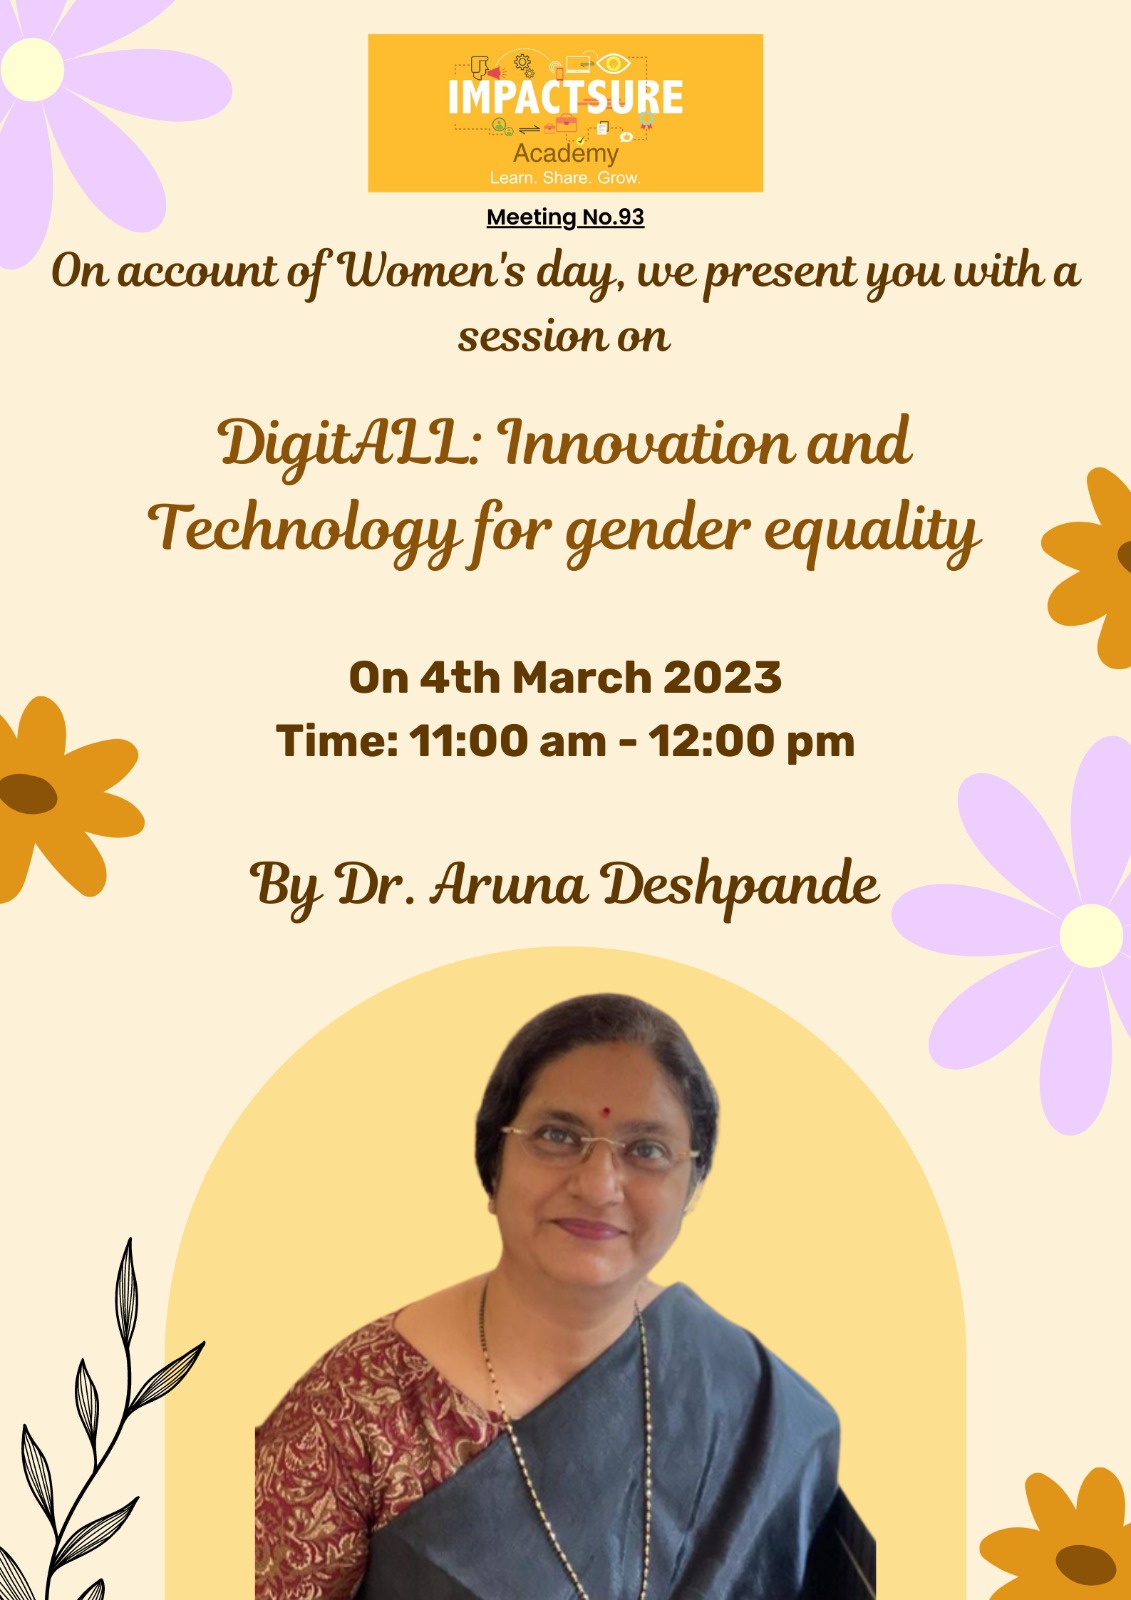  Dr. Aruna Deshpande